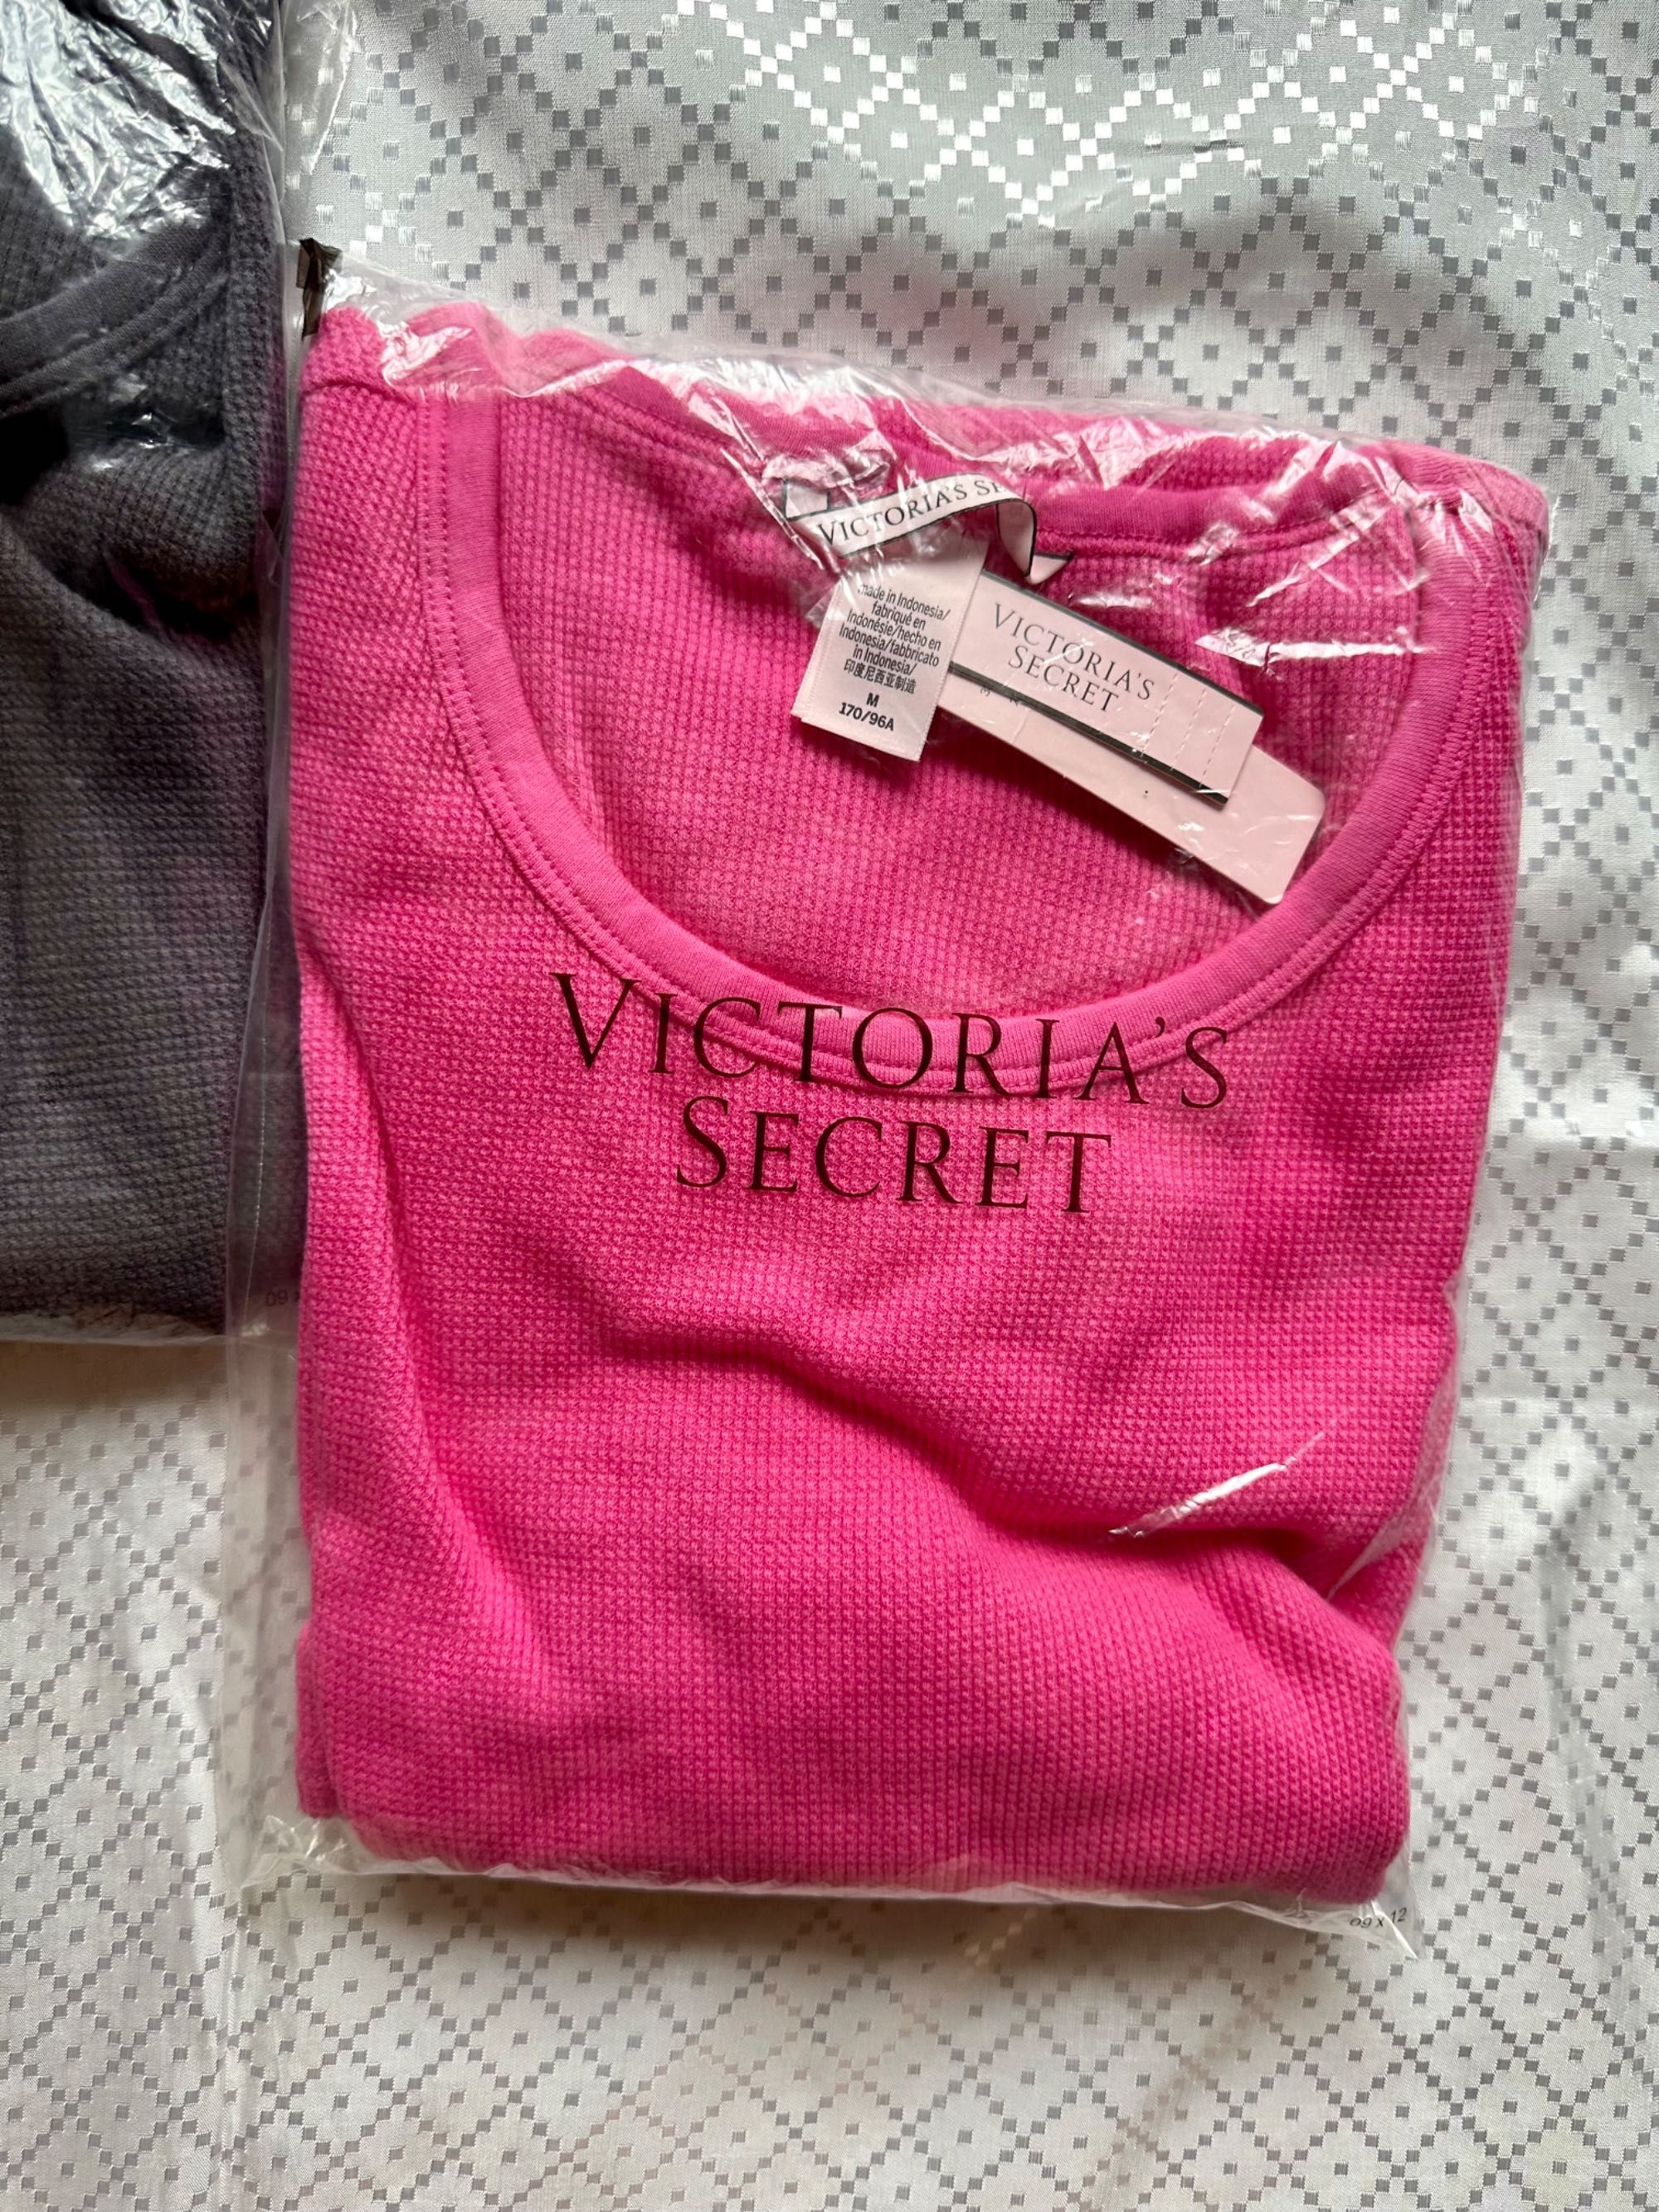 Нічна сорочка Victoria's Secret ночная рубашка (M розмір)